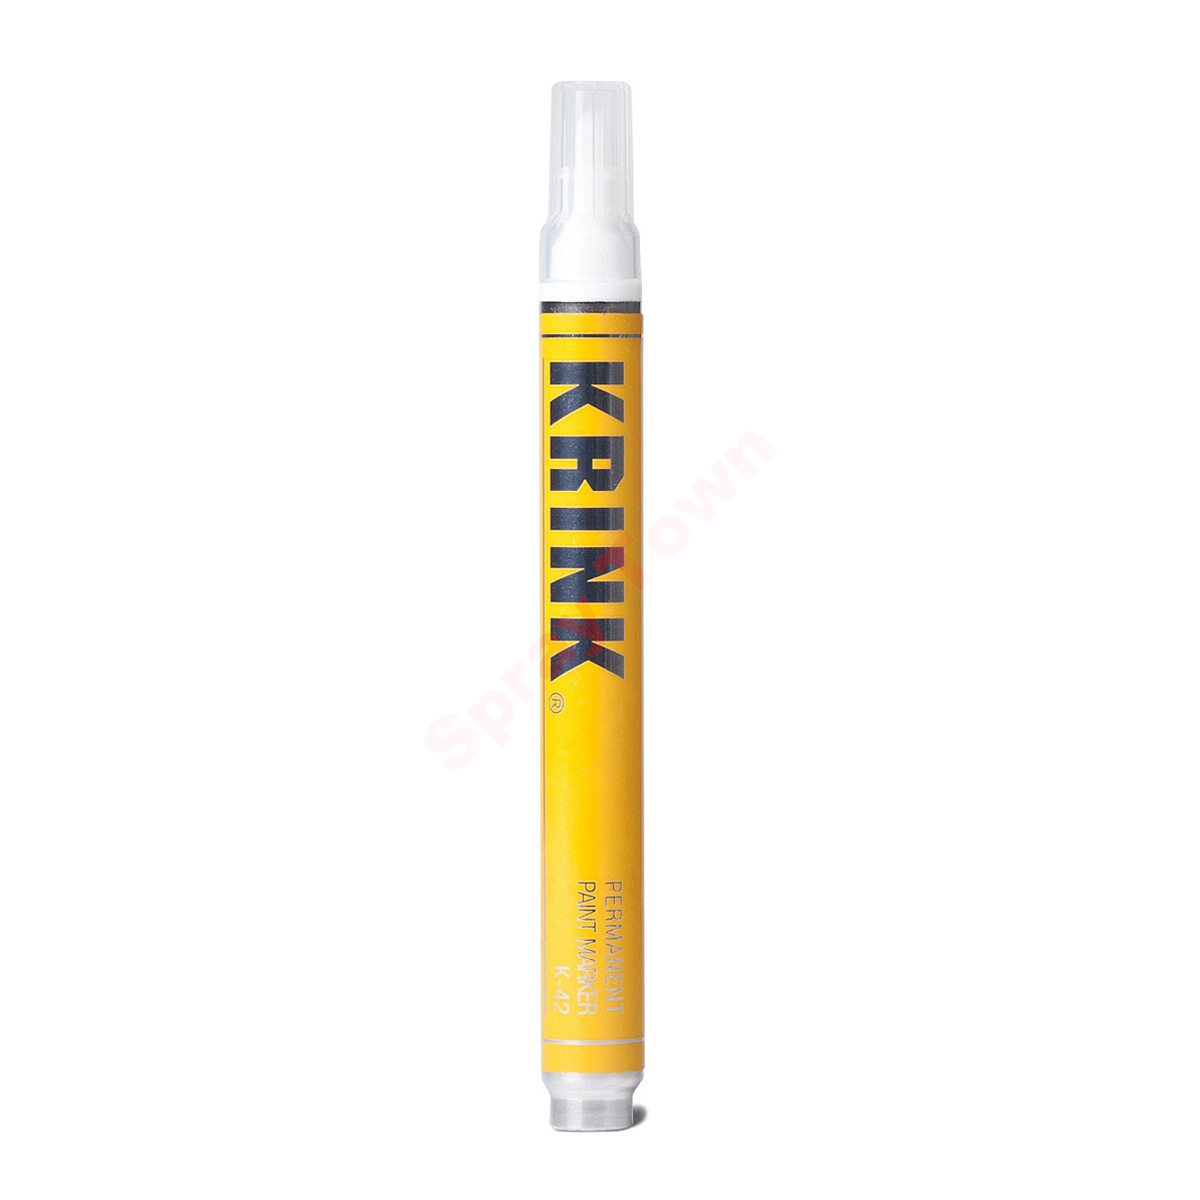 Маркер с краской Krink K-42 4мм для граффити и дизайна желтый